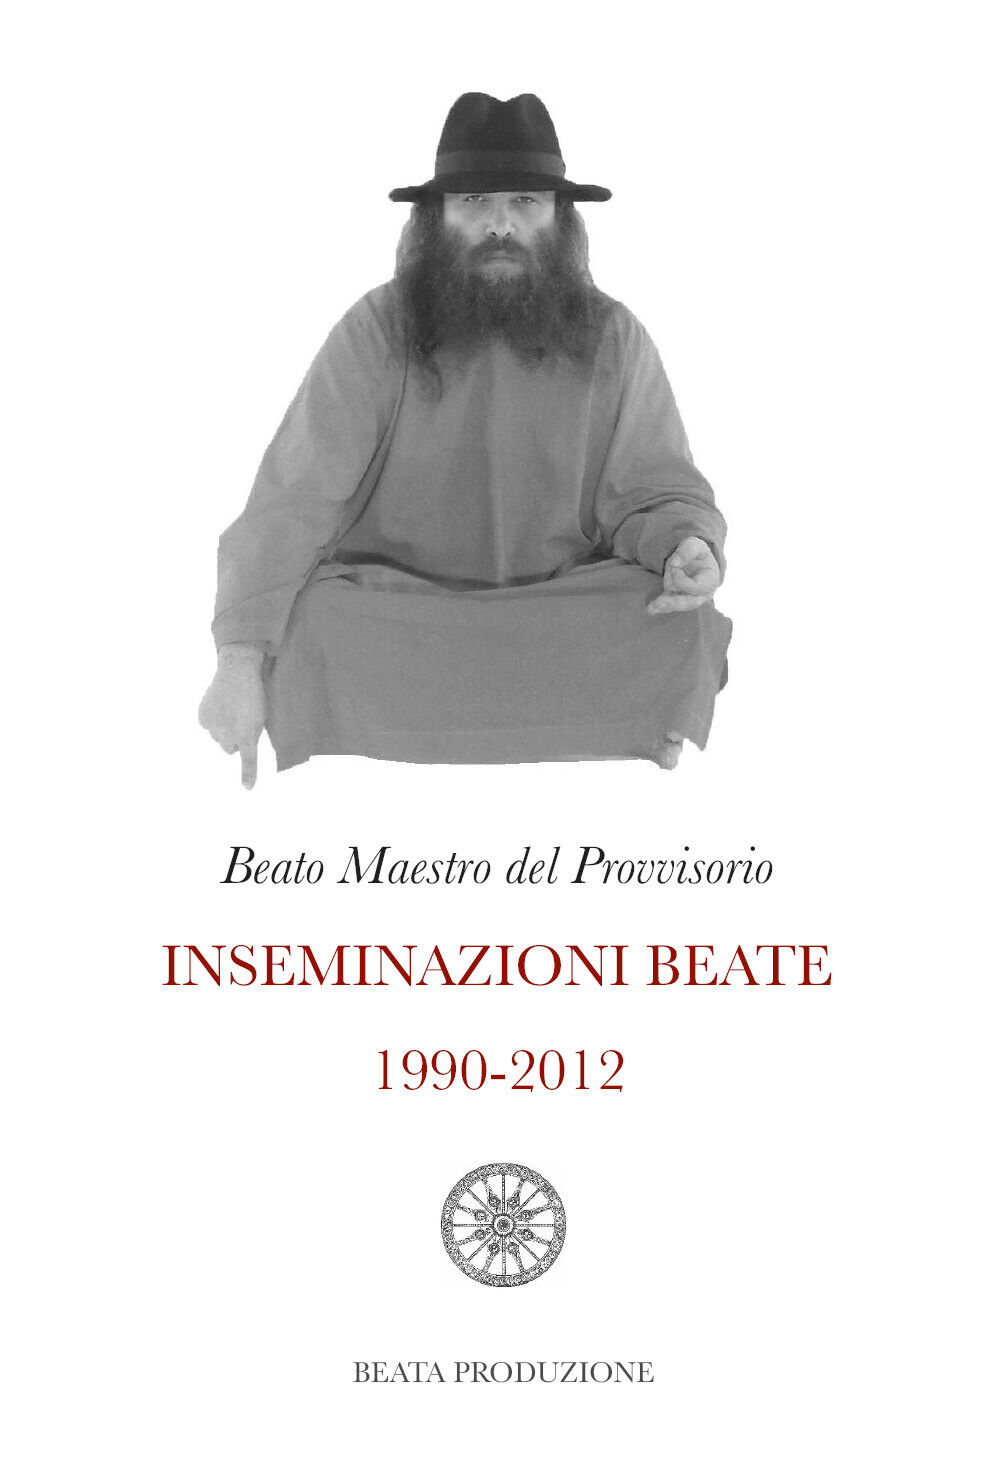 Inseminazioni beate 1990-2012 di Beato Maestro Del Provvisorio,  2020,  Youcanpr